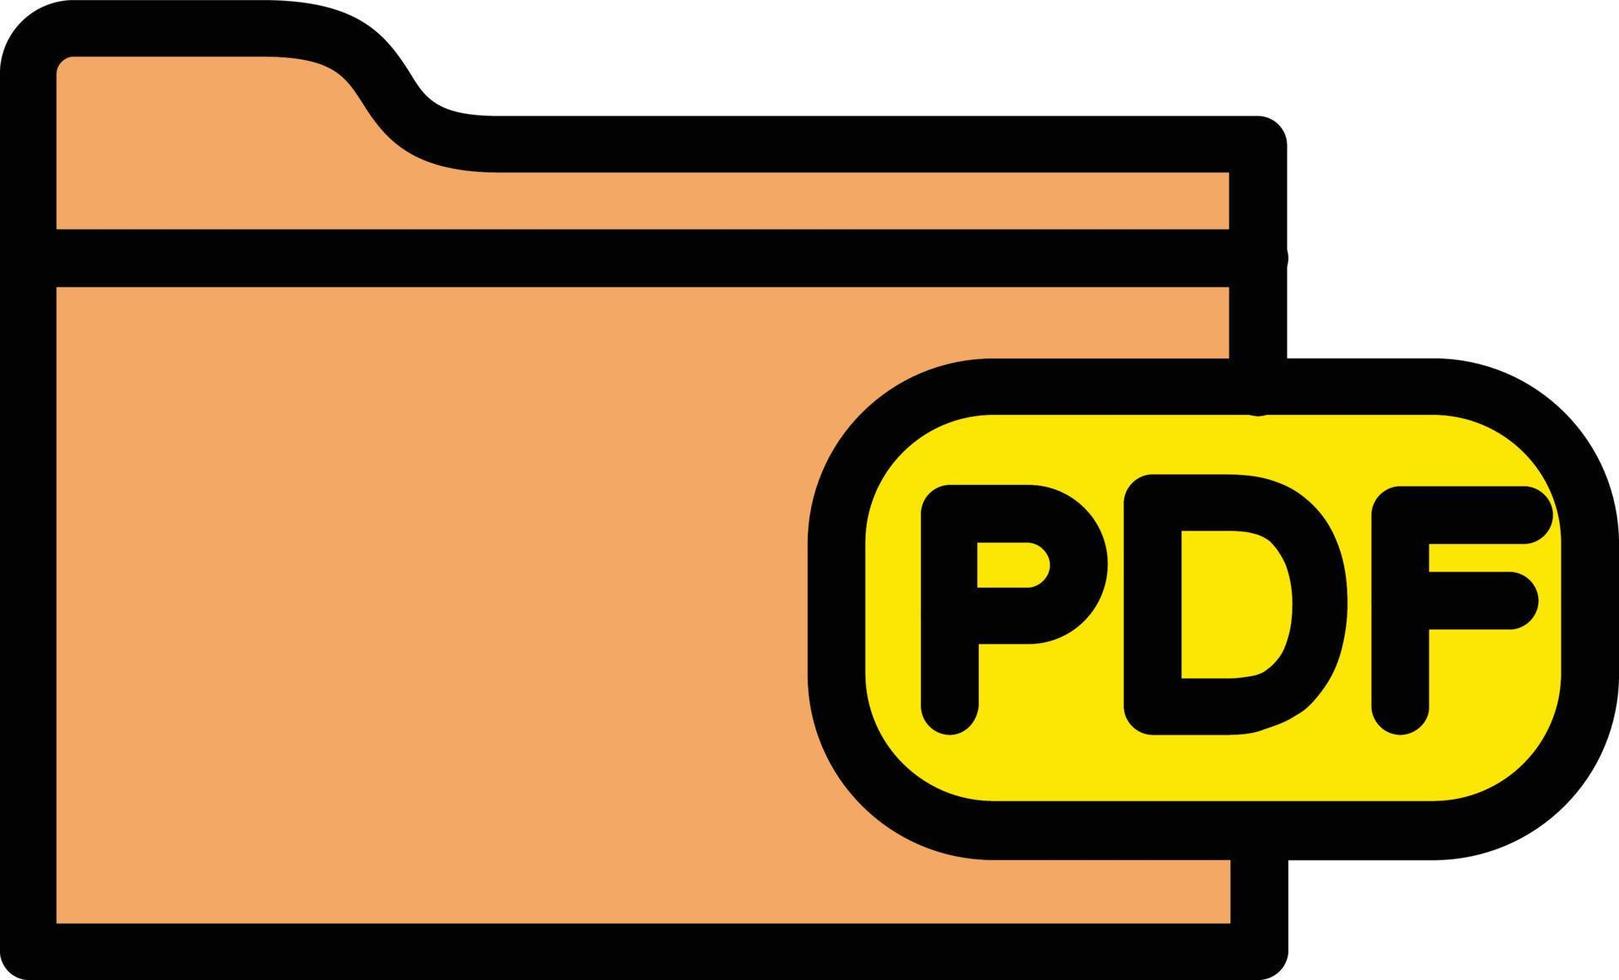 fil pdf vektor ikon design